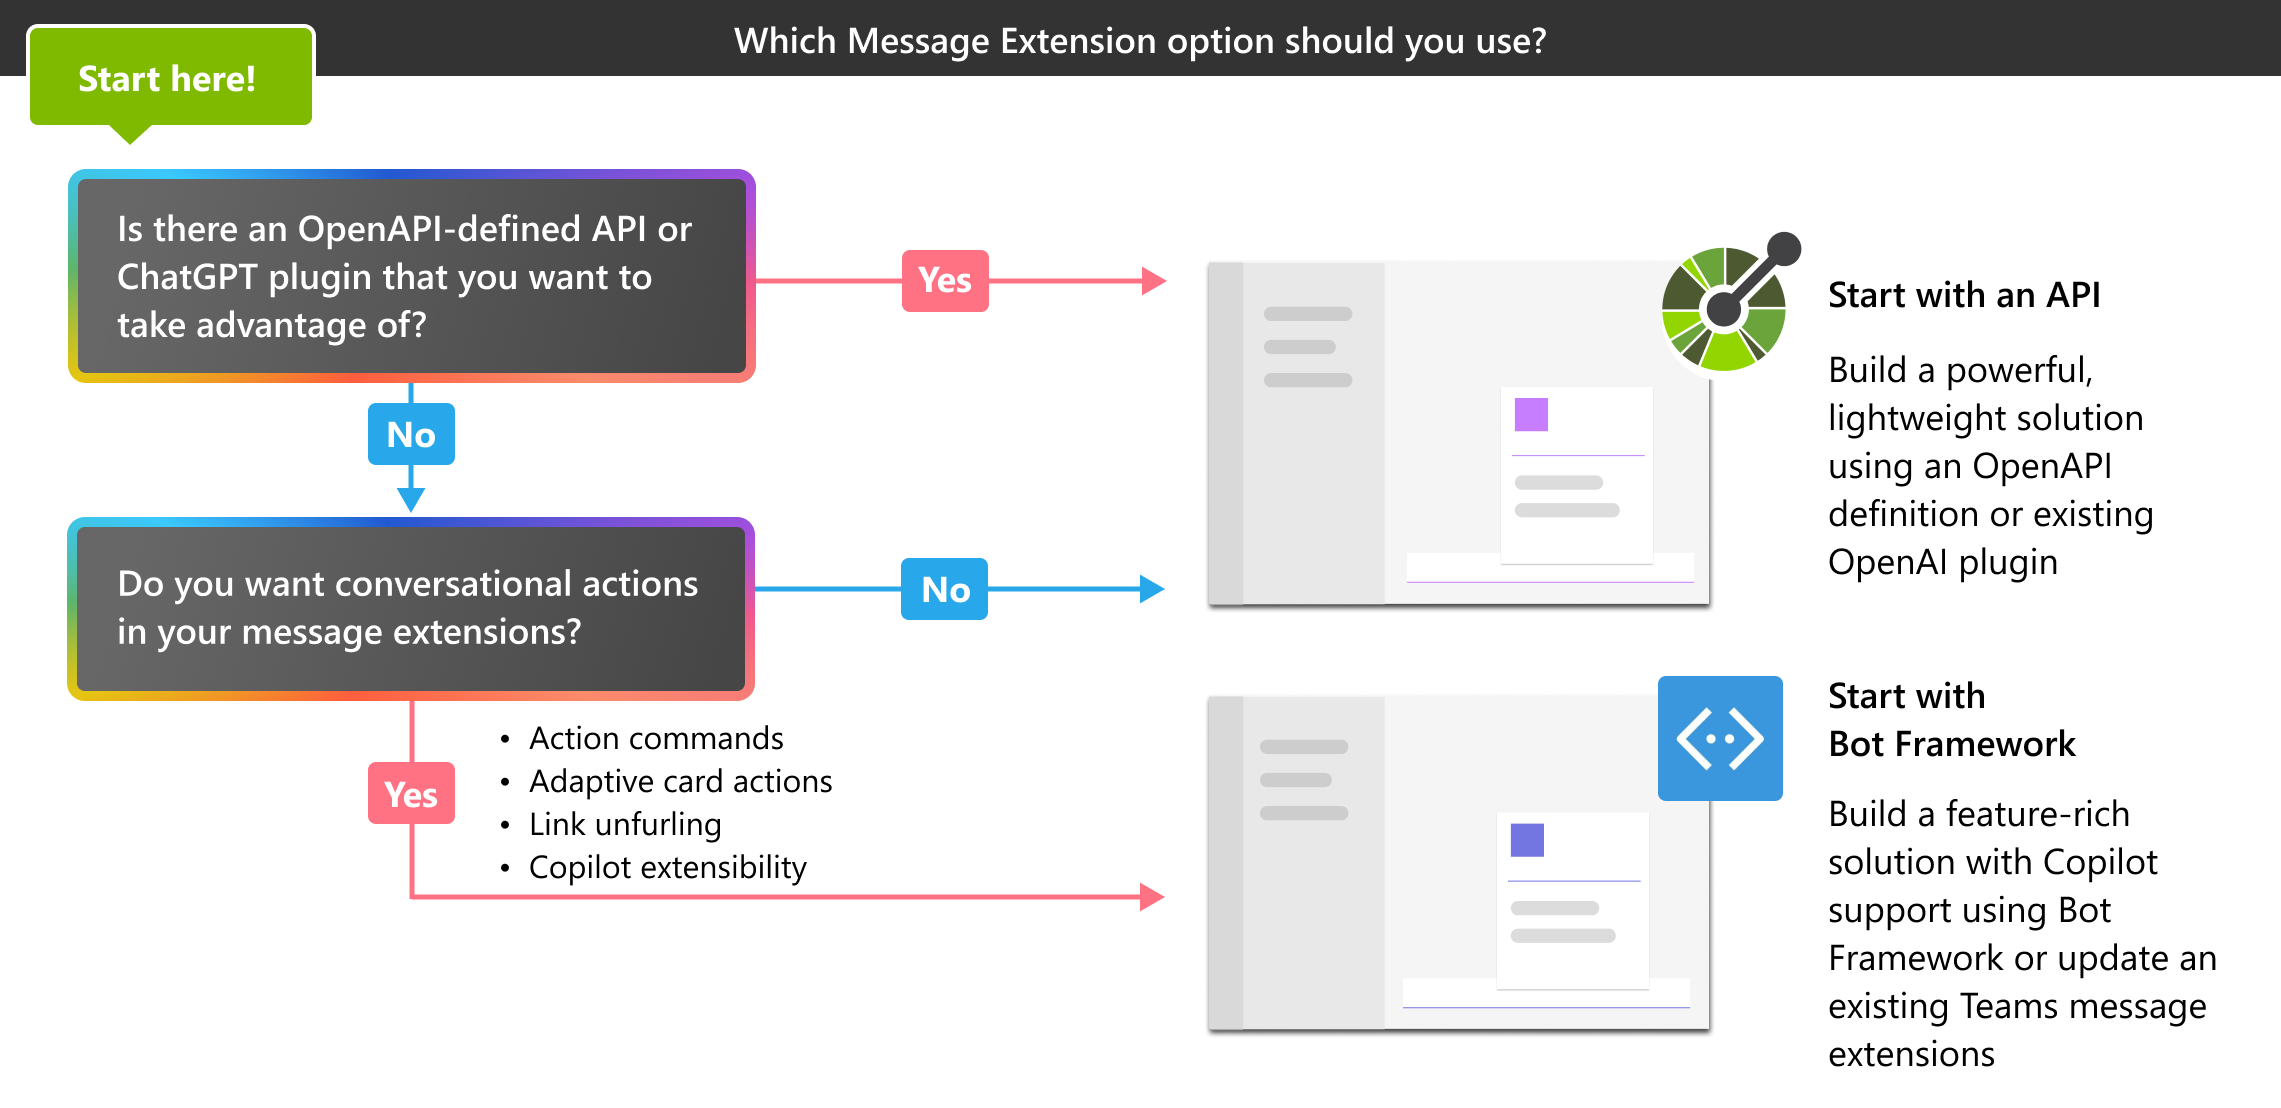 Captura de pantalla que muestra el árbol de decisión, que ayuda al usuario a elegir entre la extensión de mensaje basada en API y la basada en bots.